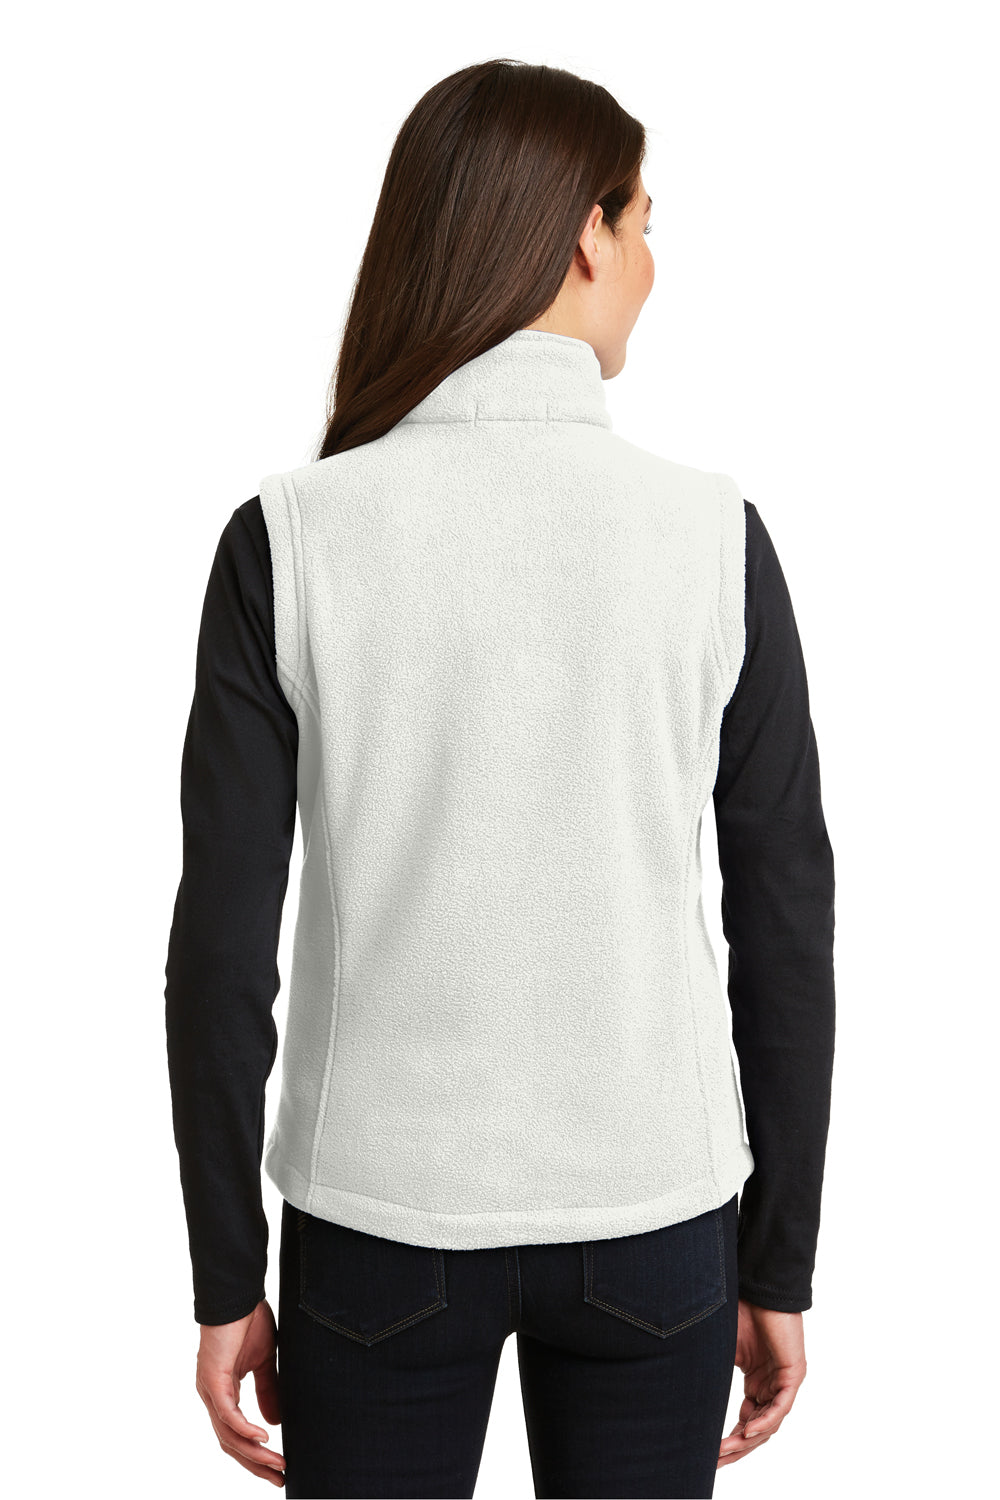 Port Authority L219 Womens Full Zip Fleece Vest White Back